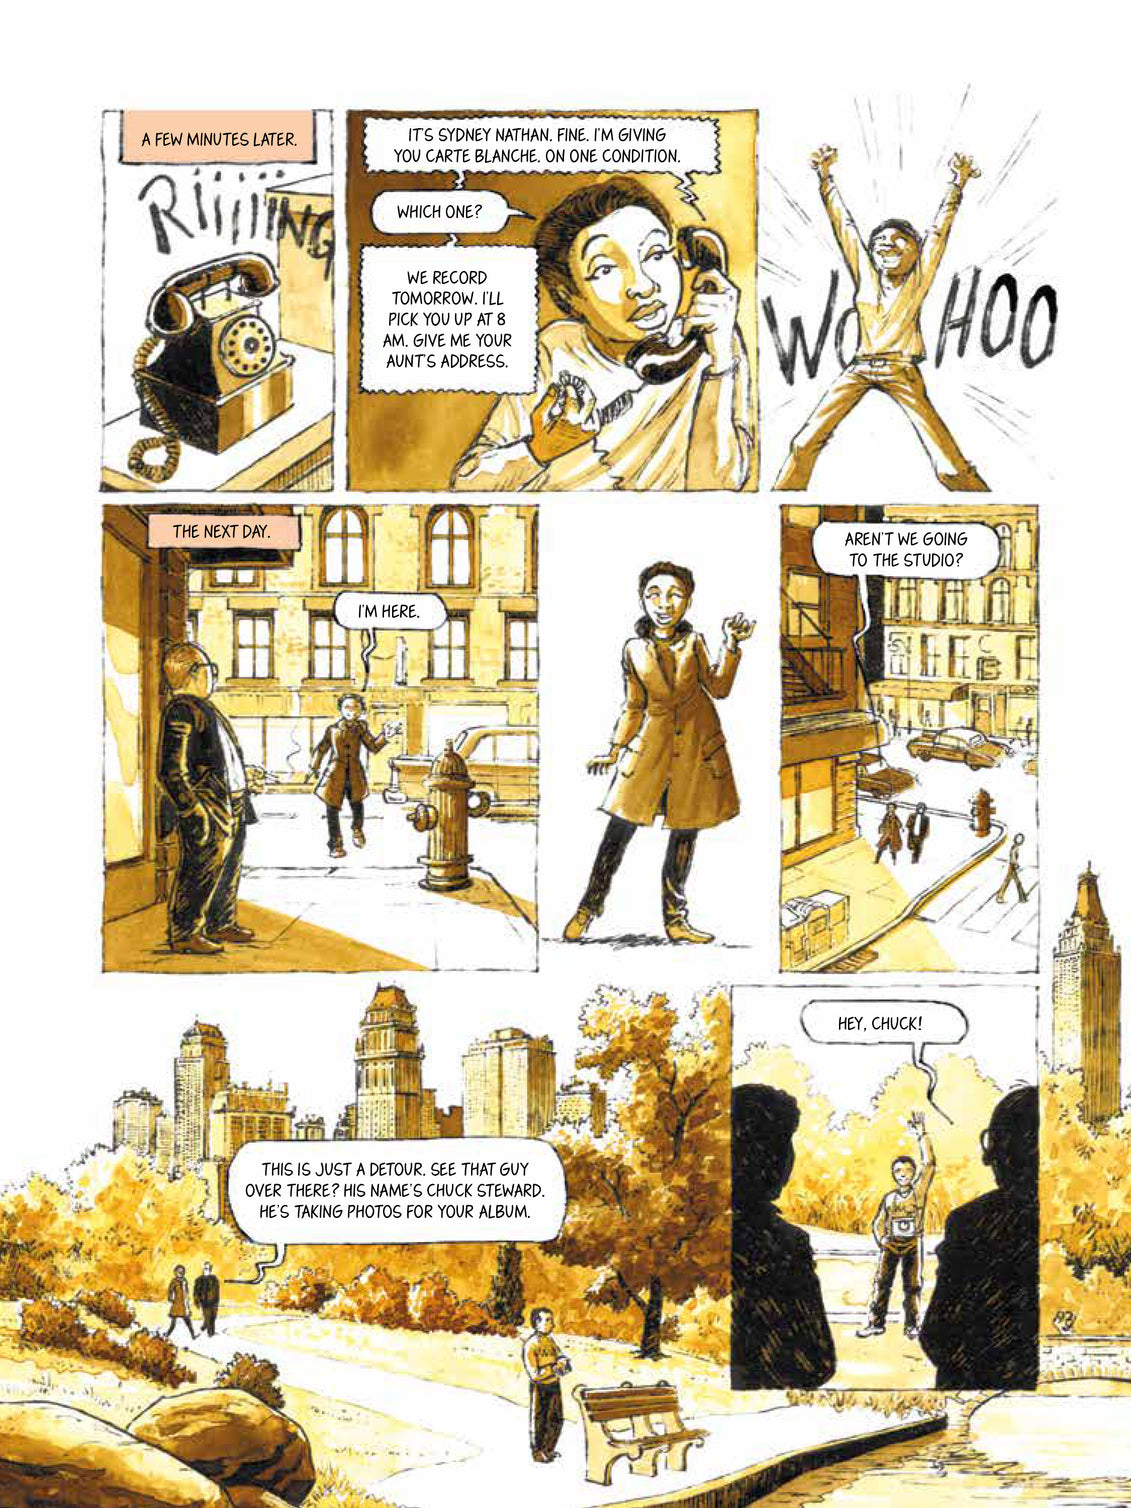 Nina Simone in Comics